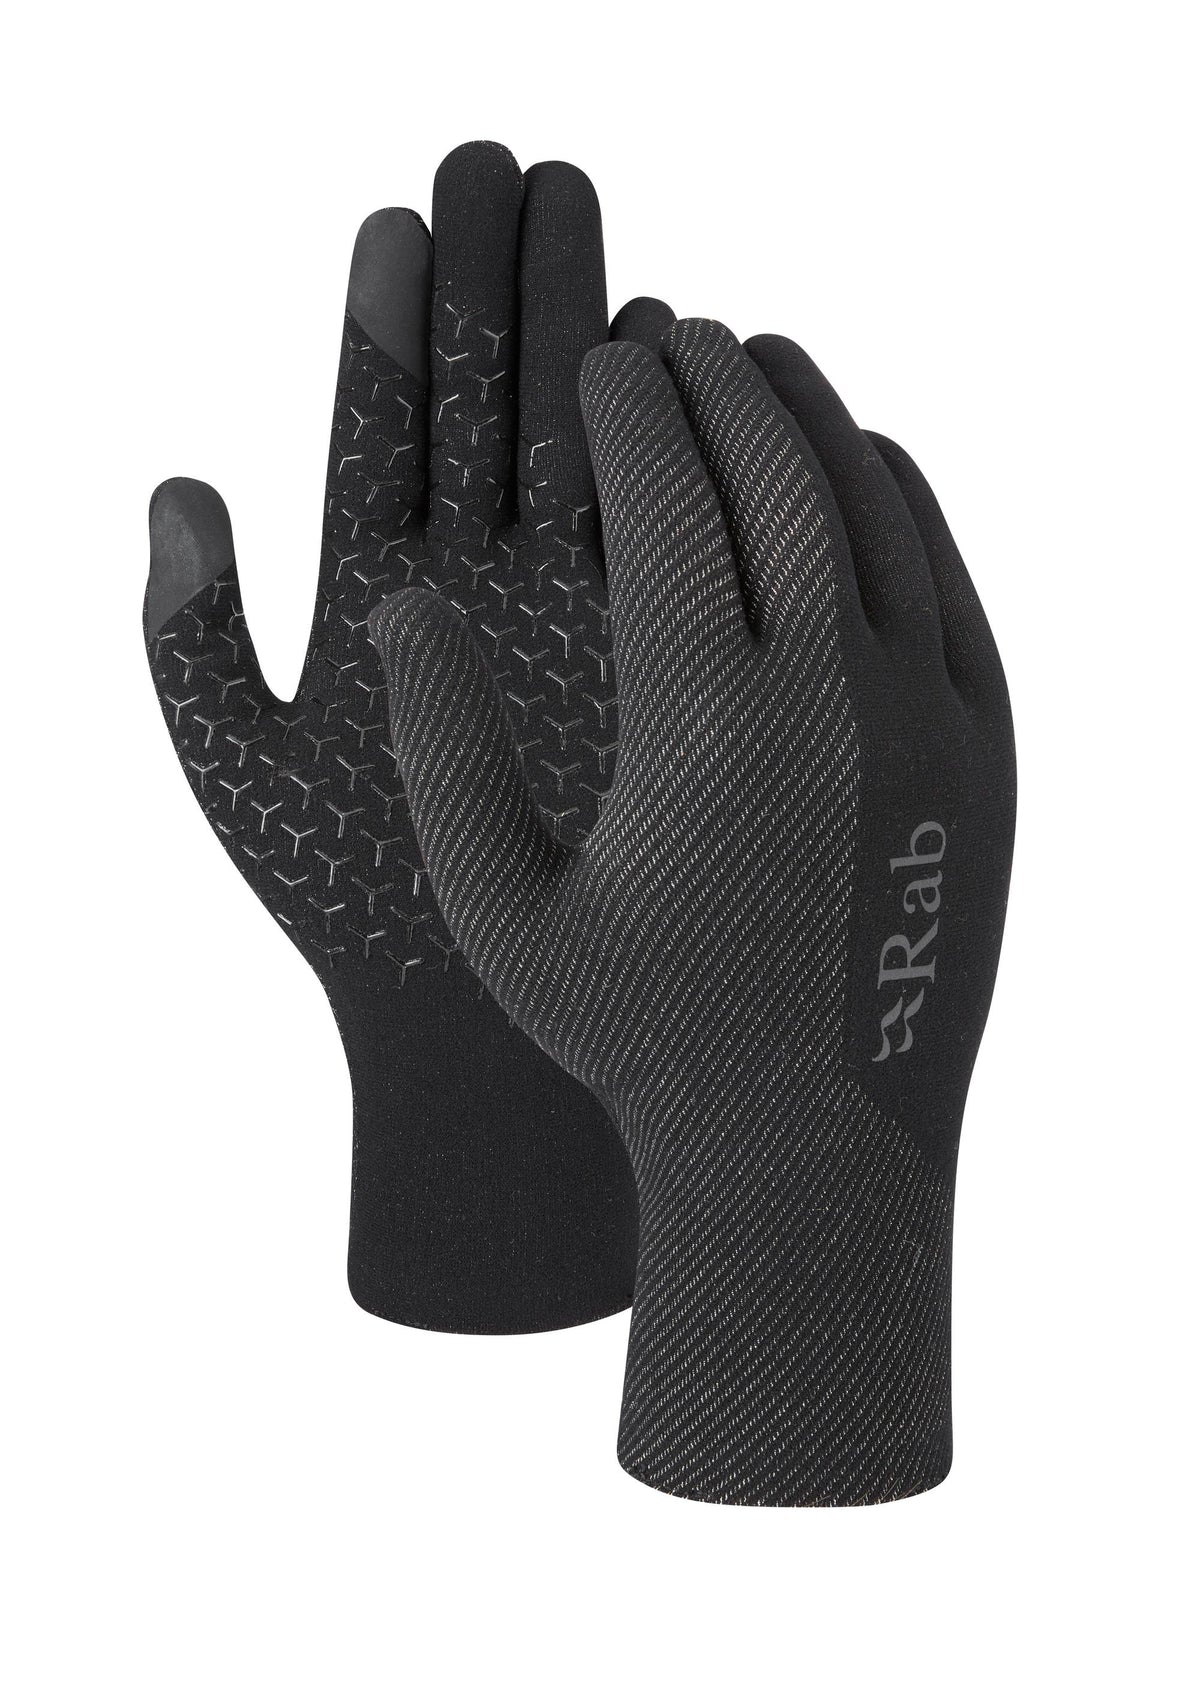 Rab Formknit Liner Gloves